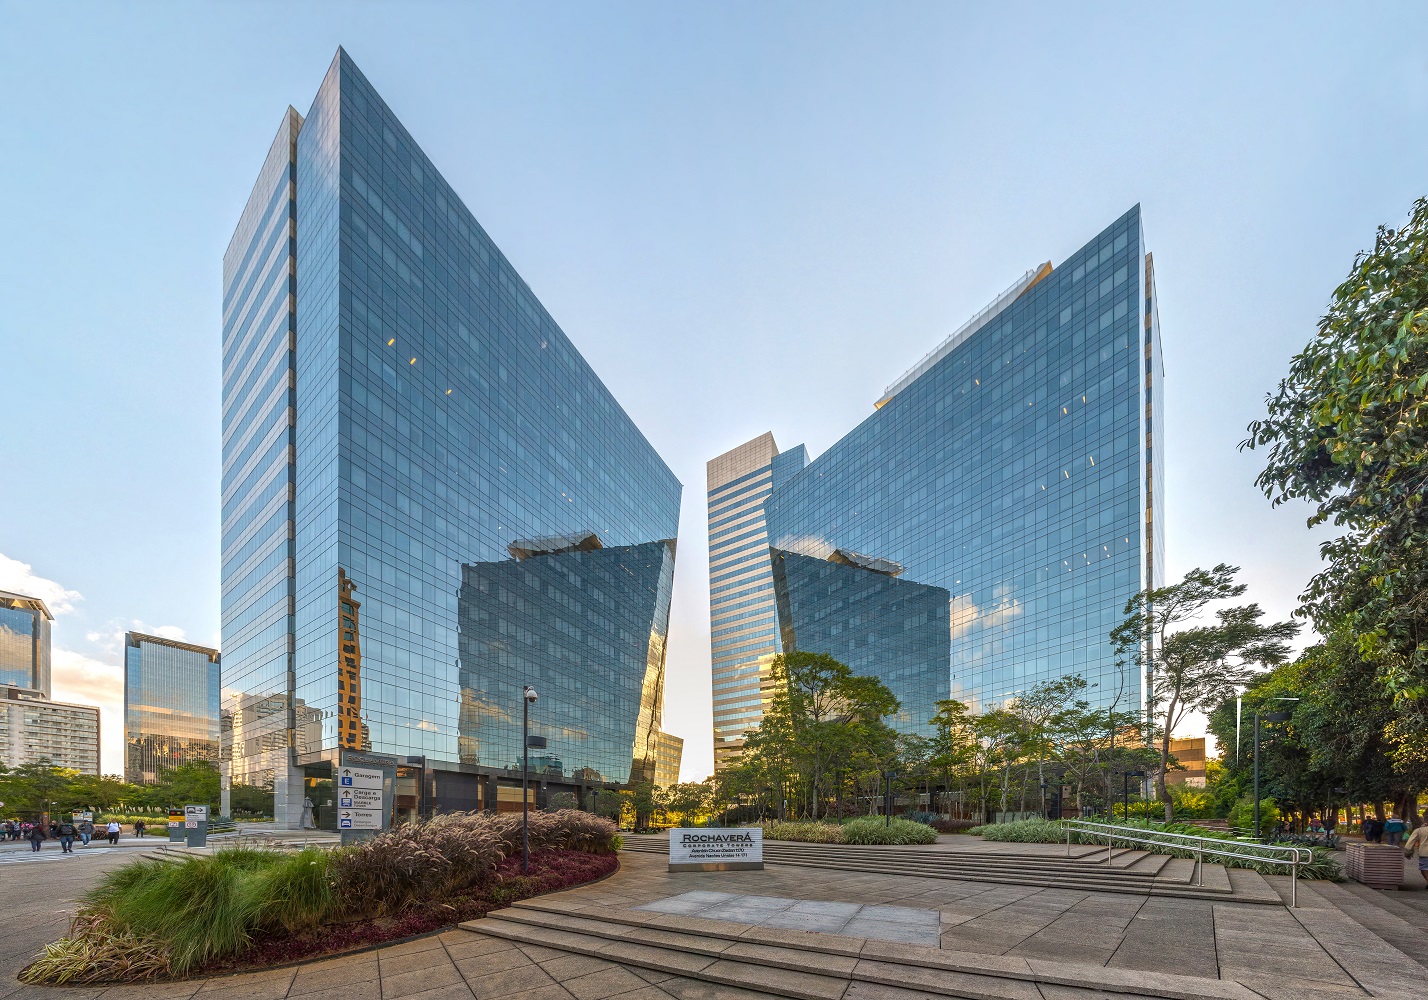 Localizado em São Paulo, o Rochaverá Corporate Towers aposta no uso de energia sustentável (Foto: Wilfredor)